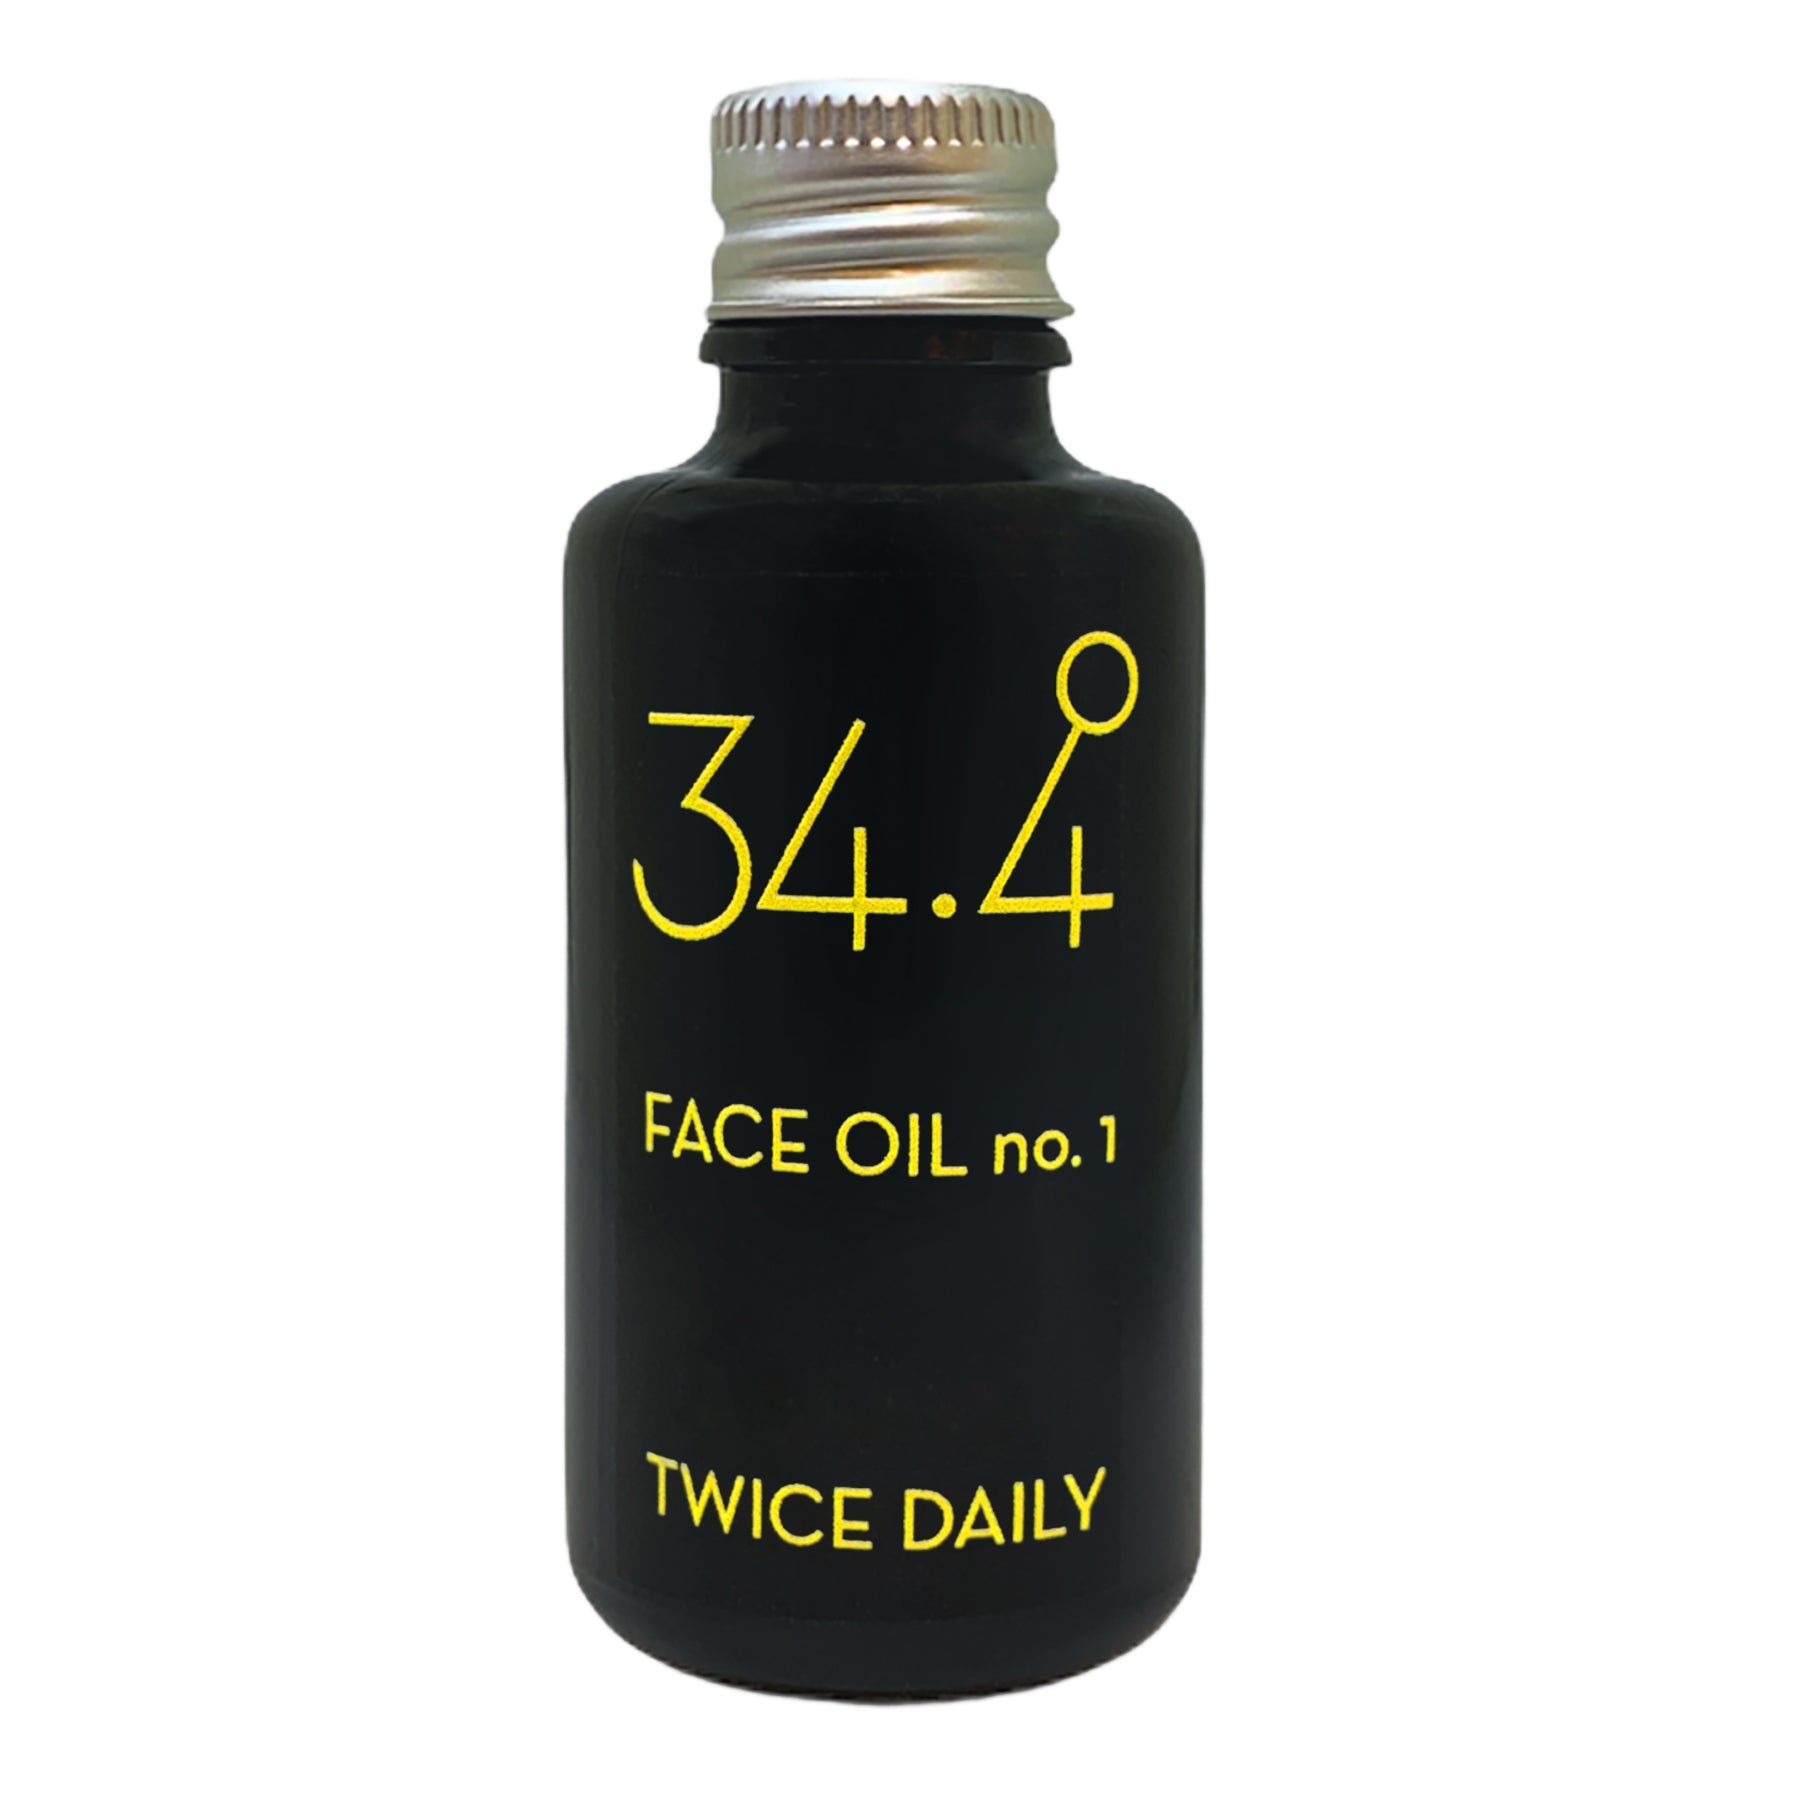 Face Oil (V)